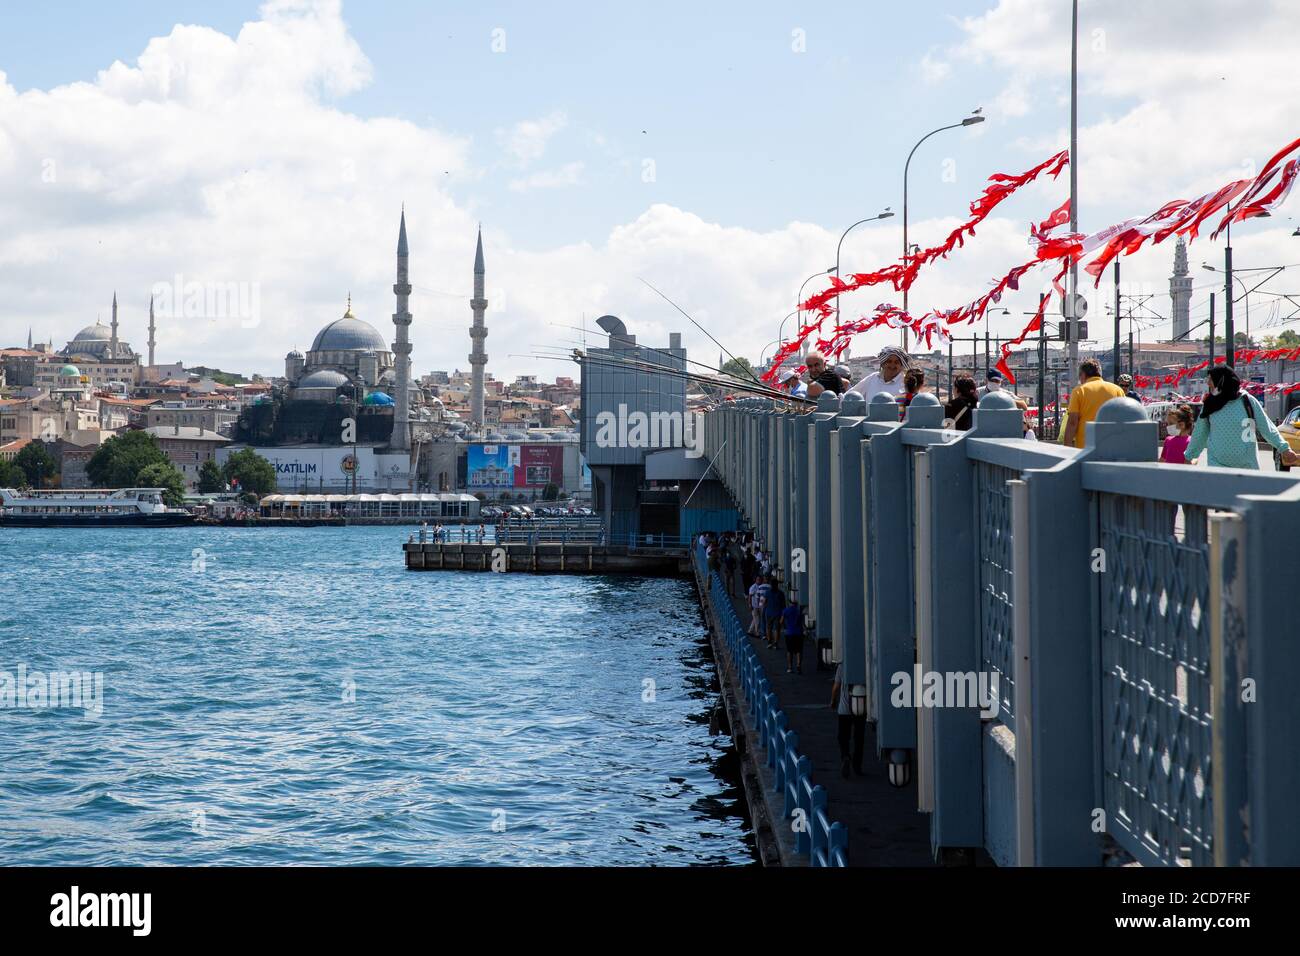 ISTANBUL / TÜRKEI - 07.17.2020: Menschen fischen auf der Golden Horn (Halic) Brücke, der Yeni Moschee und dem Beyazit Turm im Hintergrund, Eminonu. Stockfoto